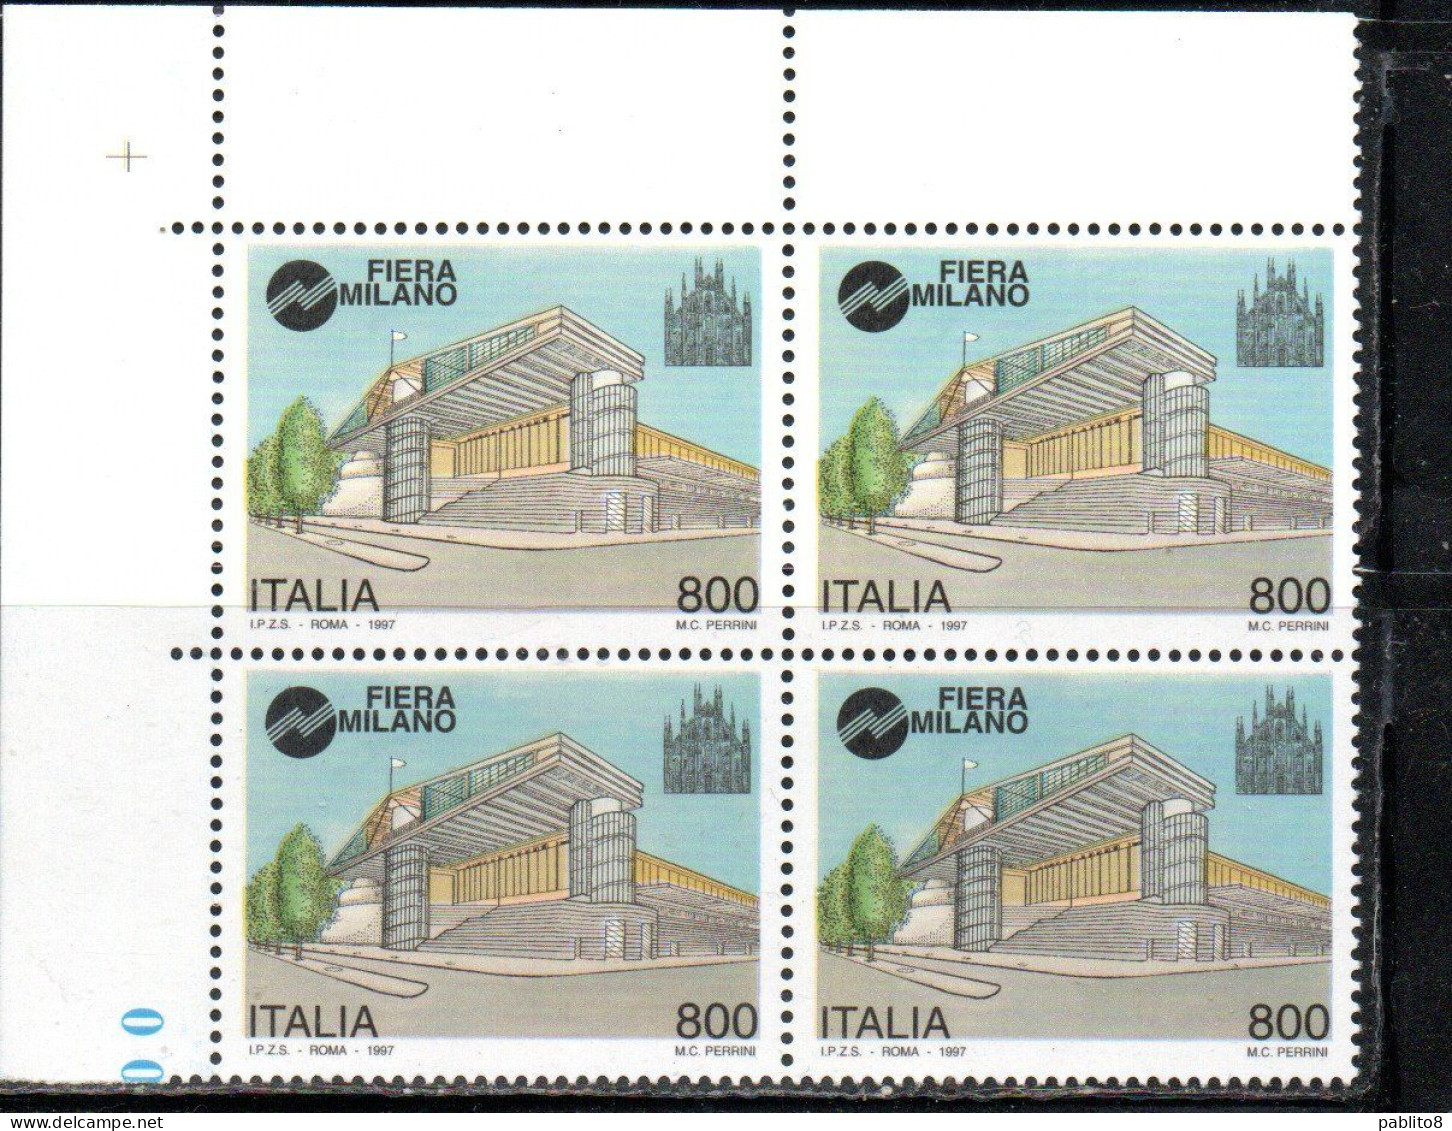 ITALIA REPUBBLICA ITALY REPUBLIC 1997 FIERA DI MILANO FAIR QUARTINA ANGOLO DI FOGLIO BLOCK MNH - 1991-00: Mint/hinged